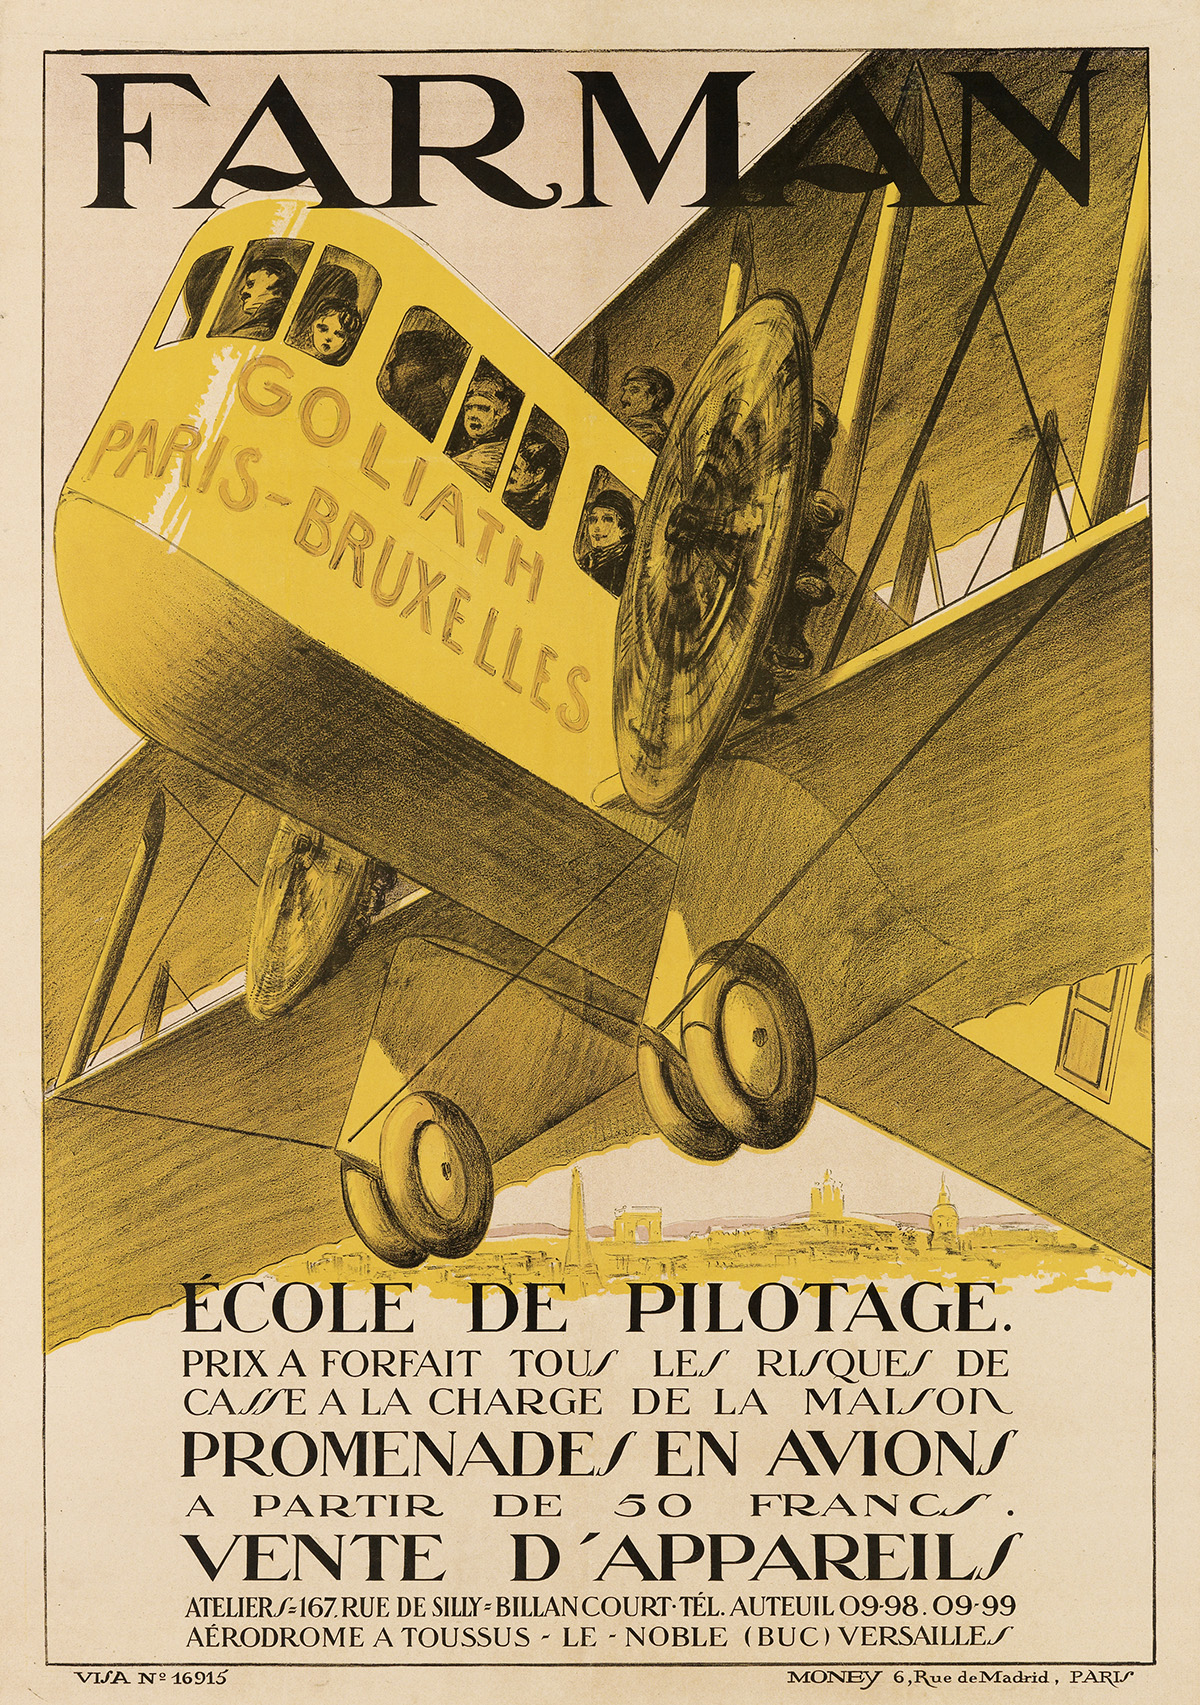 DESIGNER UNKNOWN. FARMAN / ÉCOLE DE PILOTAGE. Circa 1920. 45x31 inches, 114x80 cm. Money, Paris.